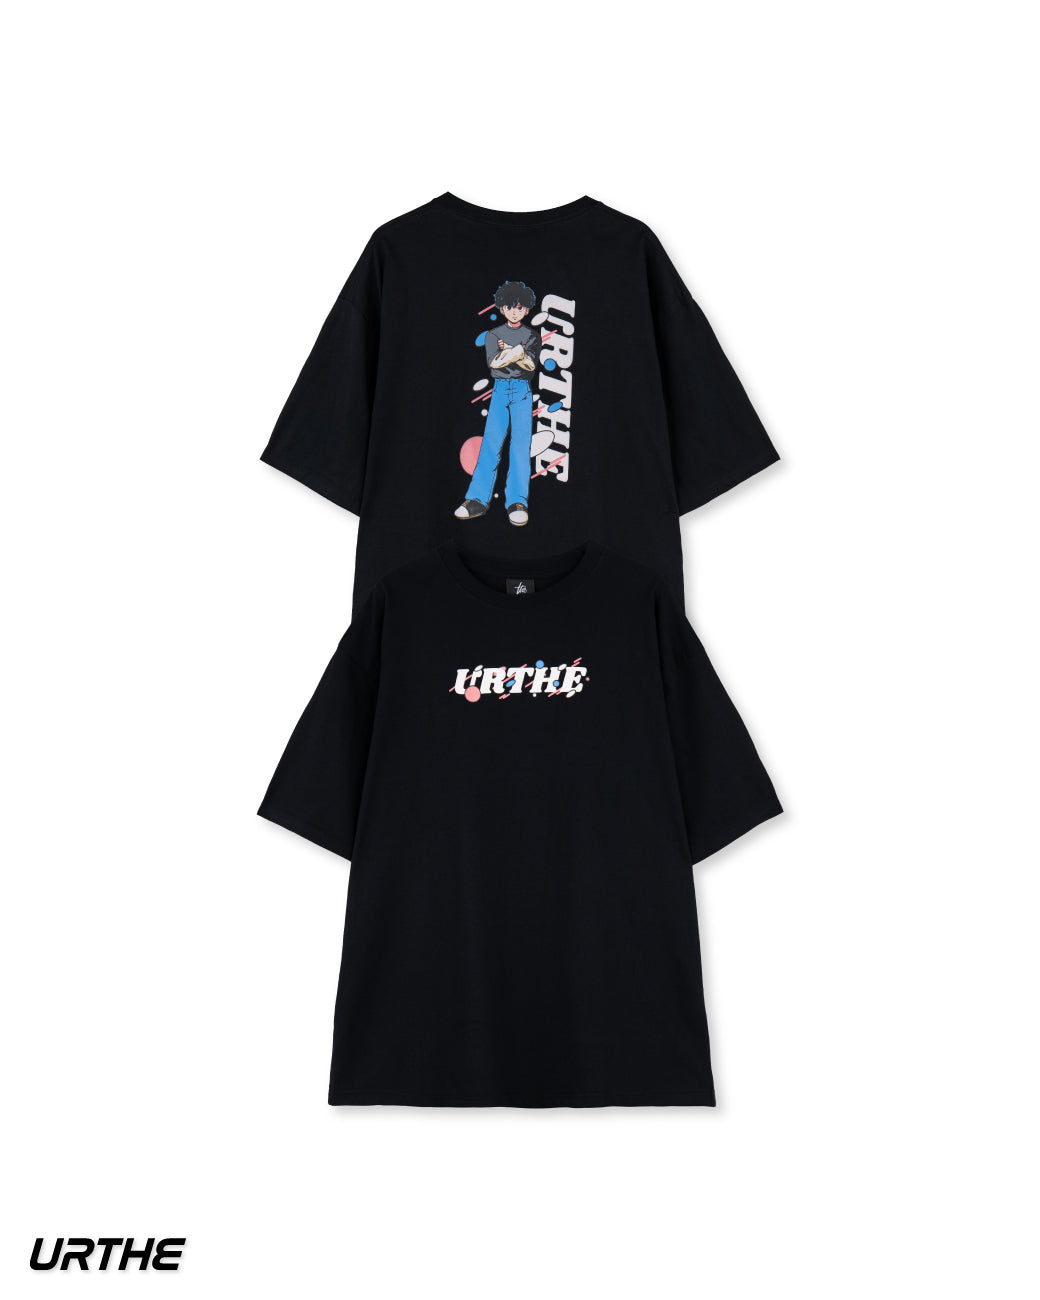 URTHE - เสื้อยืด เเขนสั้น สกรีนลาย รุ่น BOY POP GIRL POP